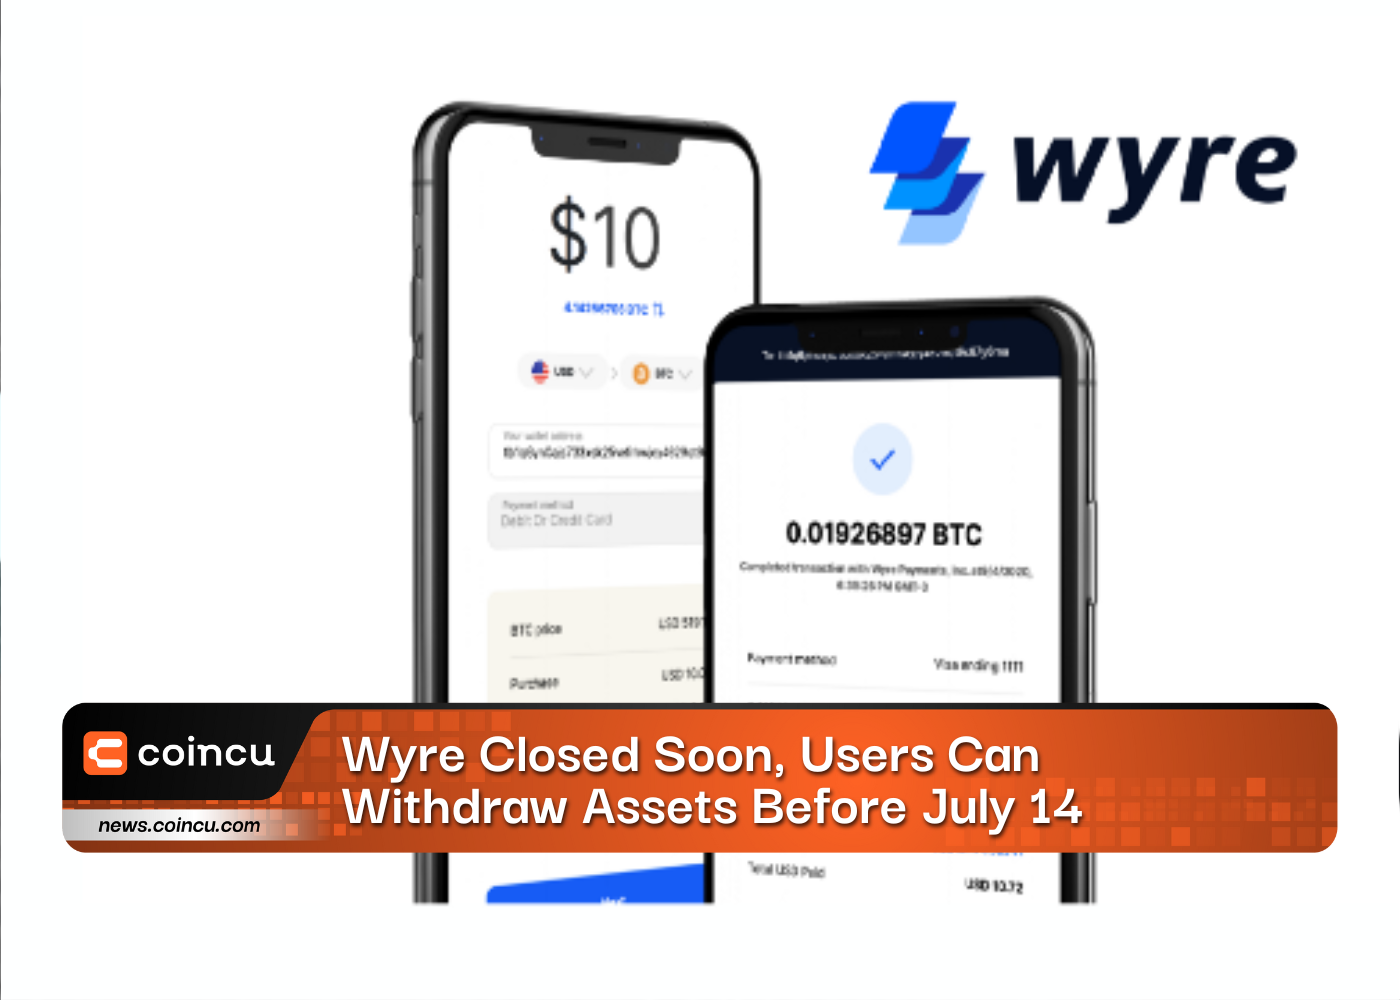 Wyre wird bald geschlossen, Benutzer können Vermögenswerte vor dem 14. Juli abheben